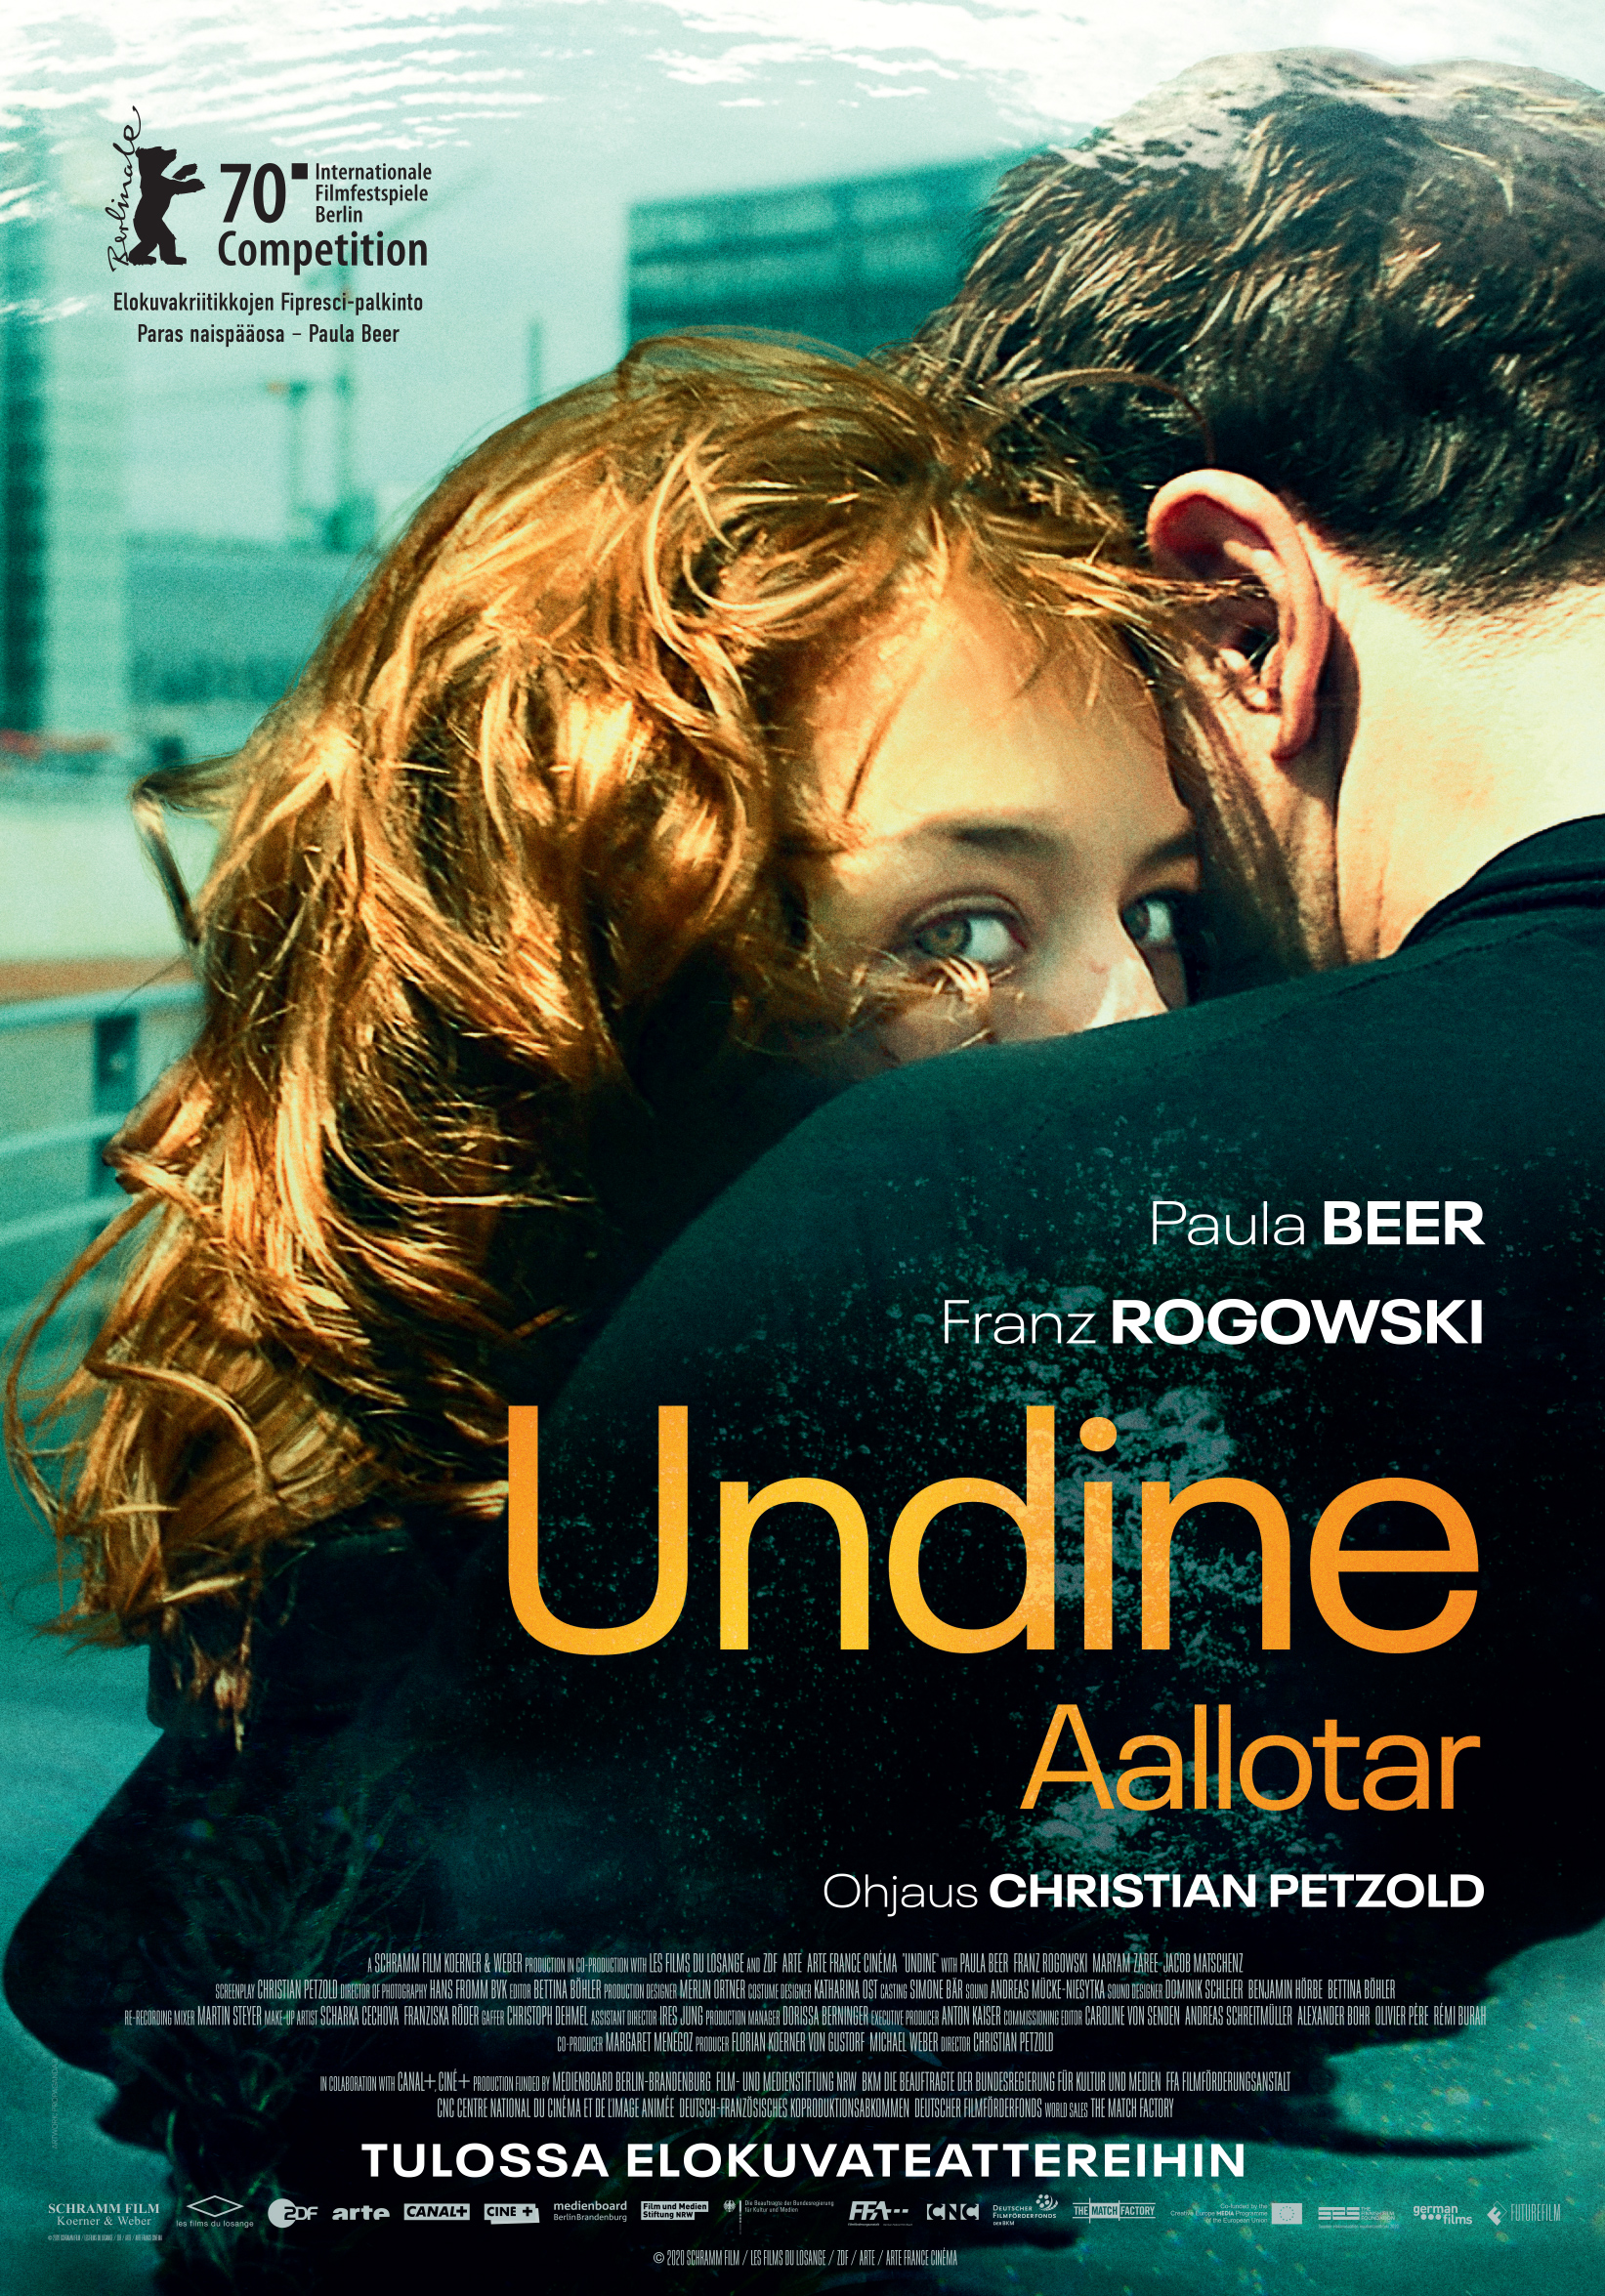 Christian Petzoldin elokuva Undine - Aallotar Kangasala-talon K-Kinossa lokakuussa 2020.